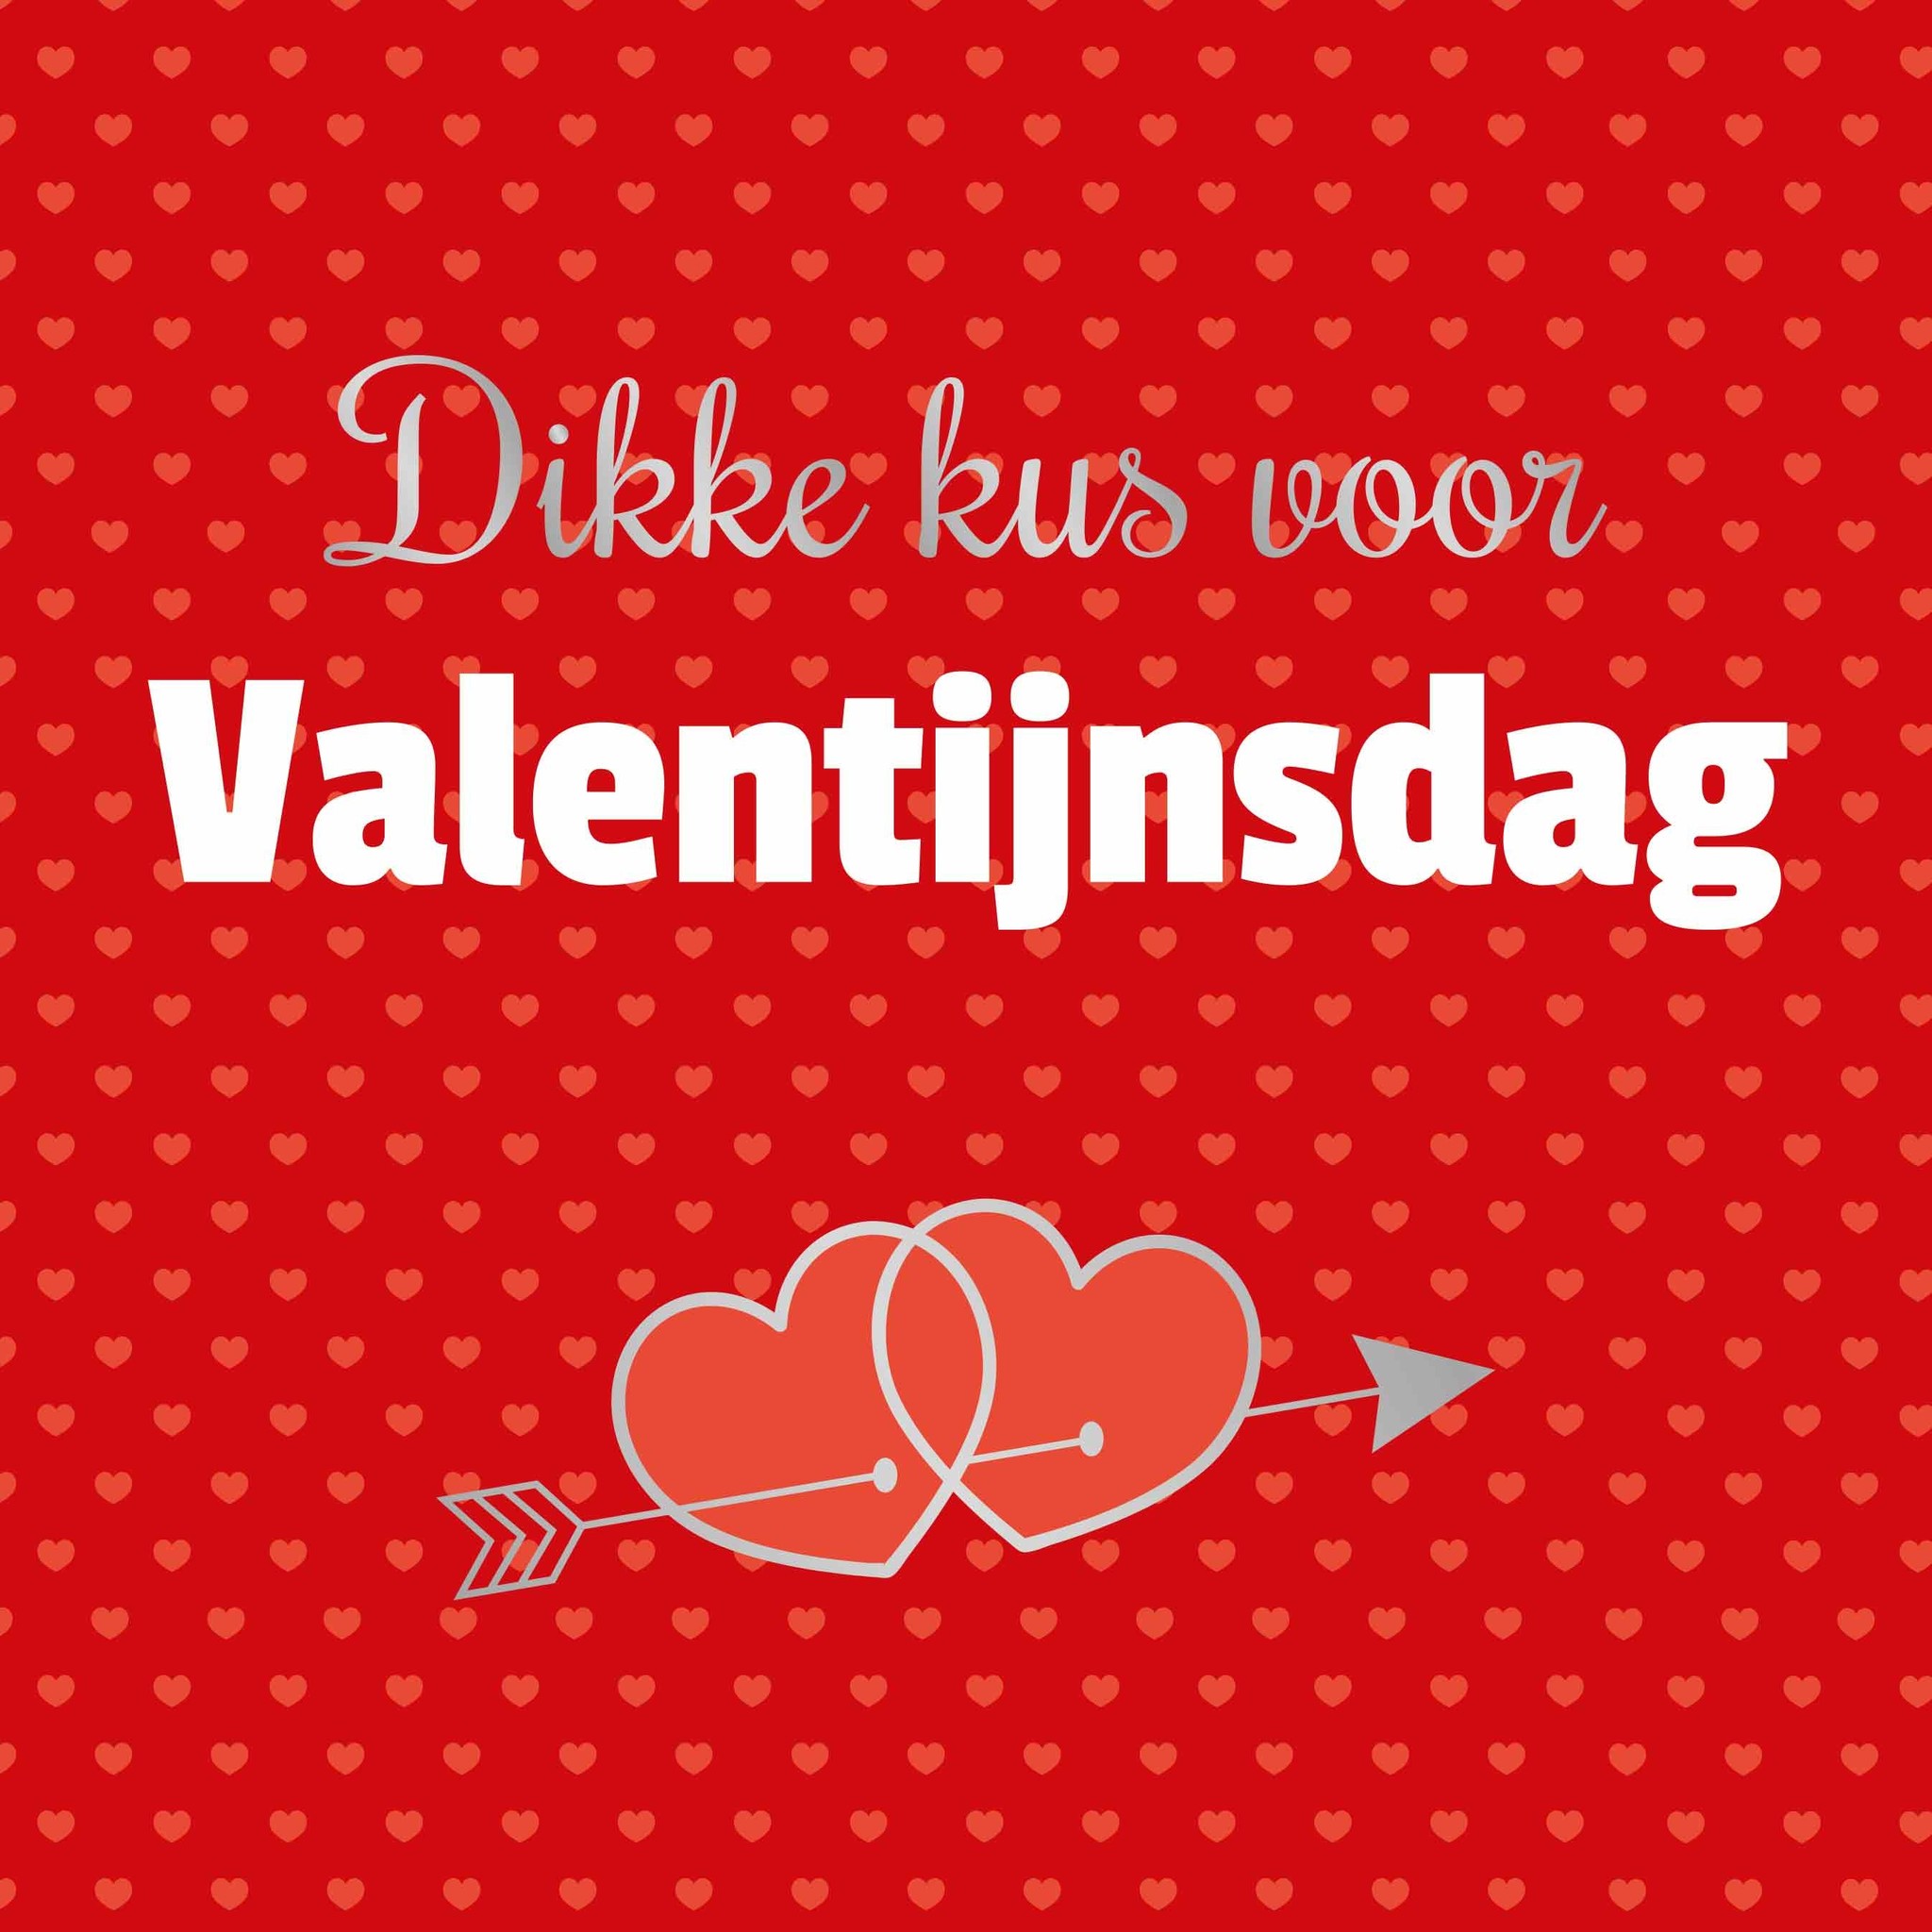 XL kaart - kus voor Valentijnsdag - Snelwenskaart.nl